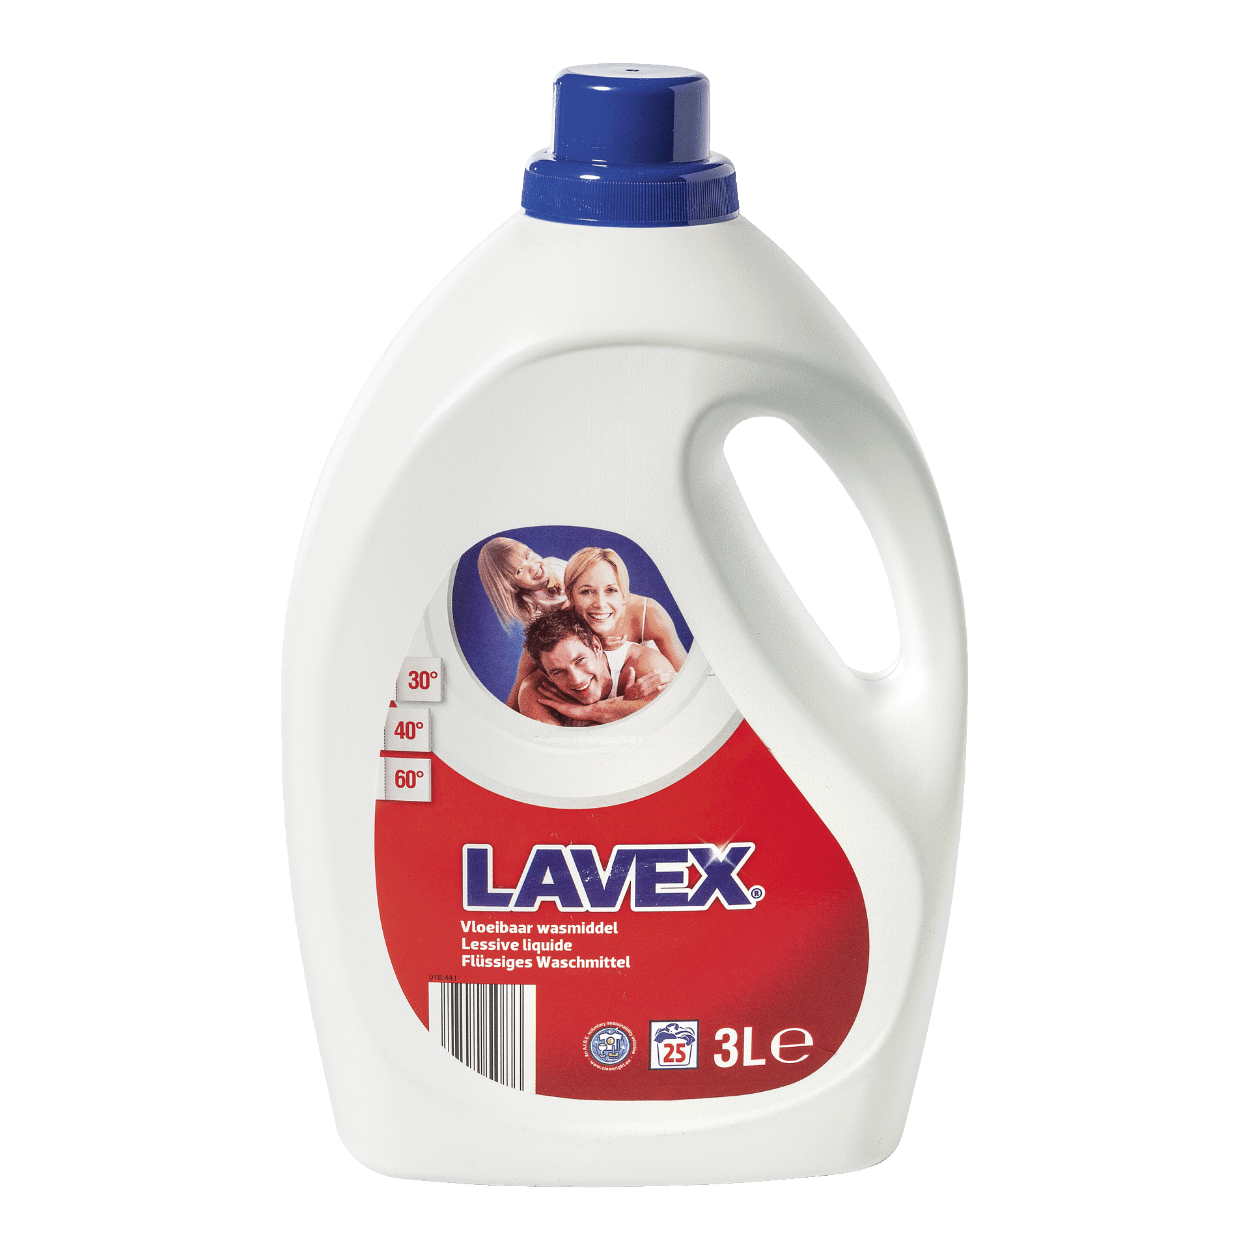 LAVEX® Lessive liquide bon marché chez ALDI